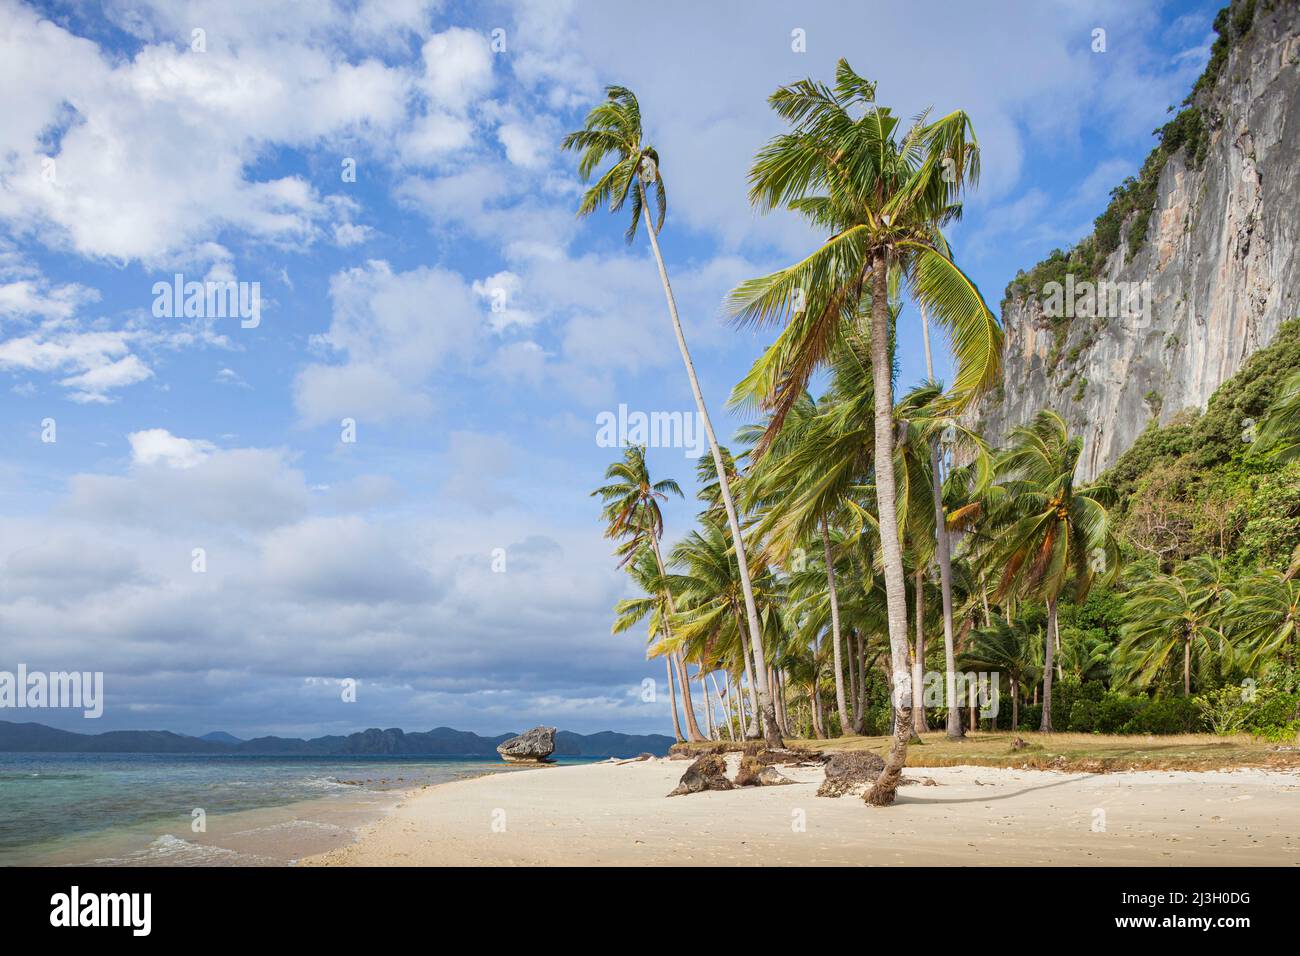 Filippine, Palawan, El Nido, Arcipelago Bacuit, Isola di Pinagbuyutan, calda luce del mattino su palme da cocco e scogliere della spiaggia di sabbia bianca Foto Stock